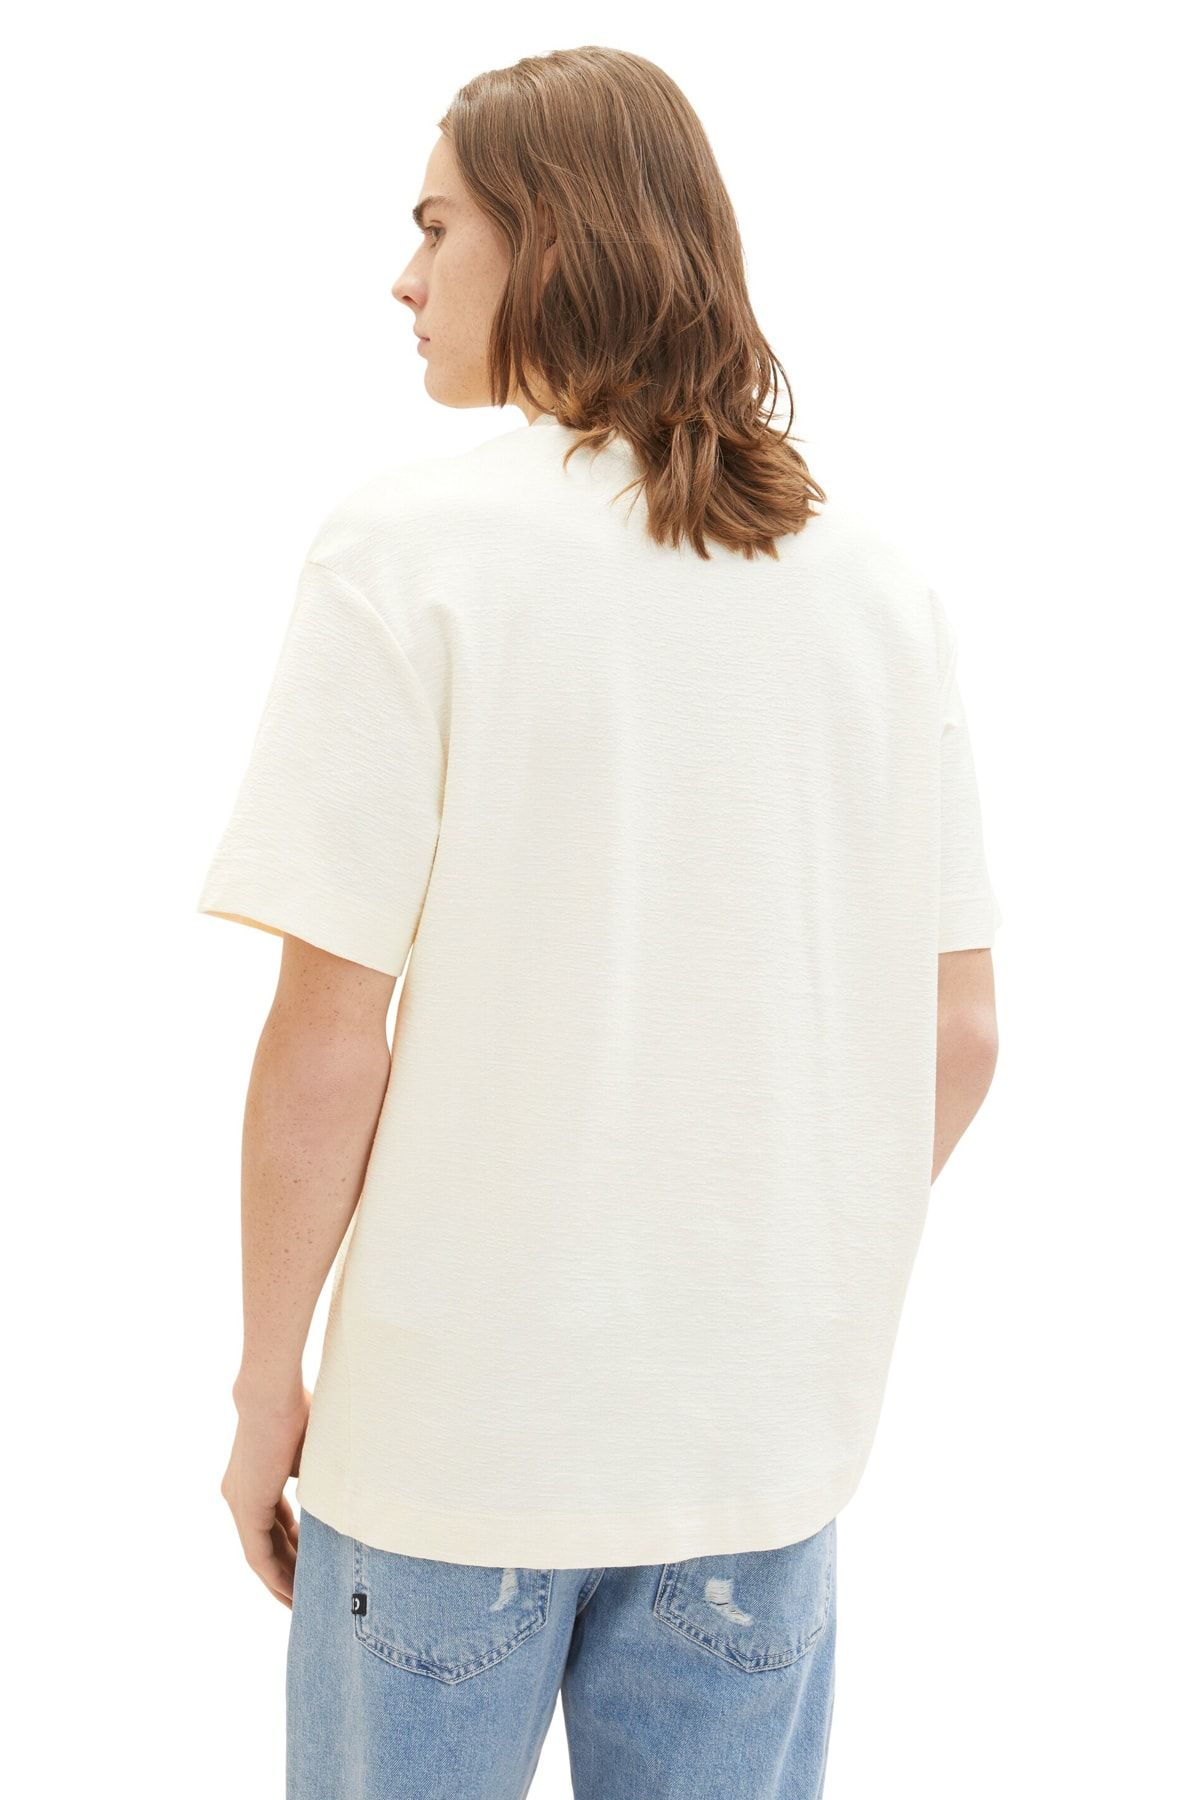 Tom Tailor Denim Men\'s T-Shirt - Wool White Trendyol